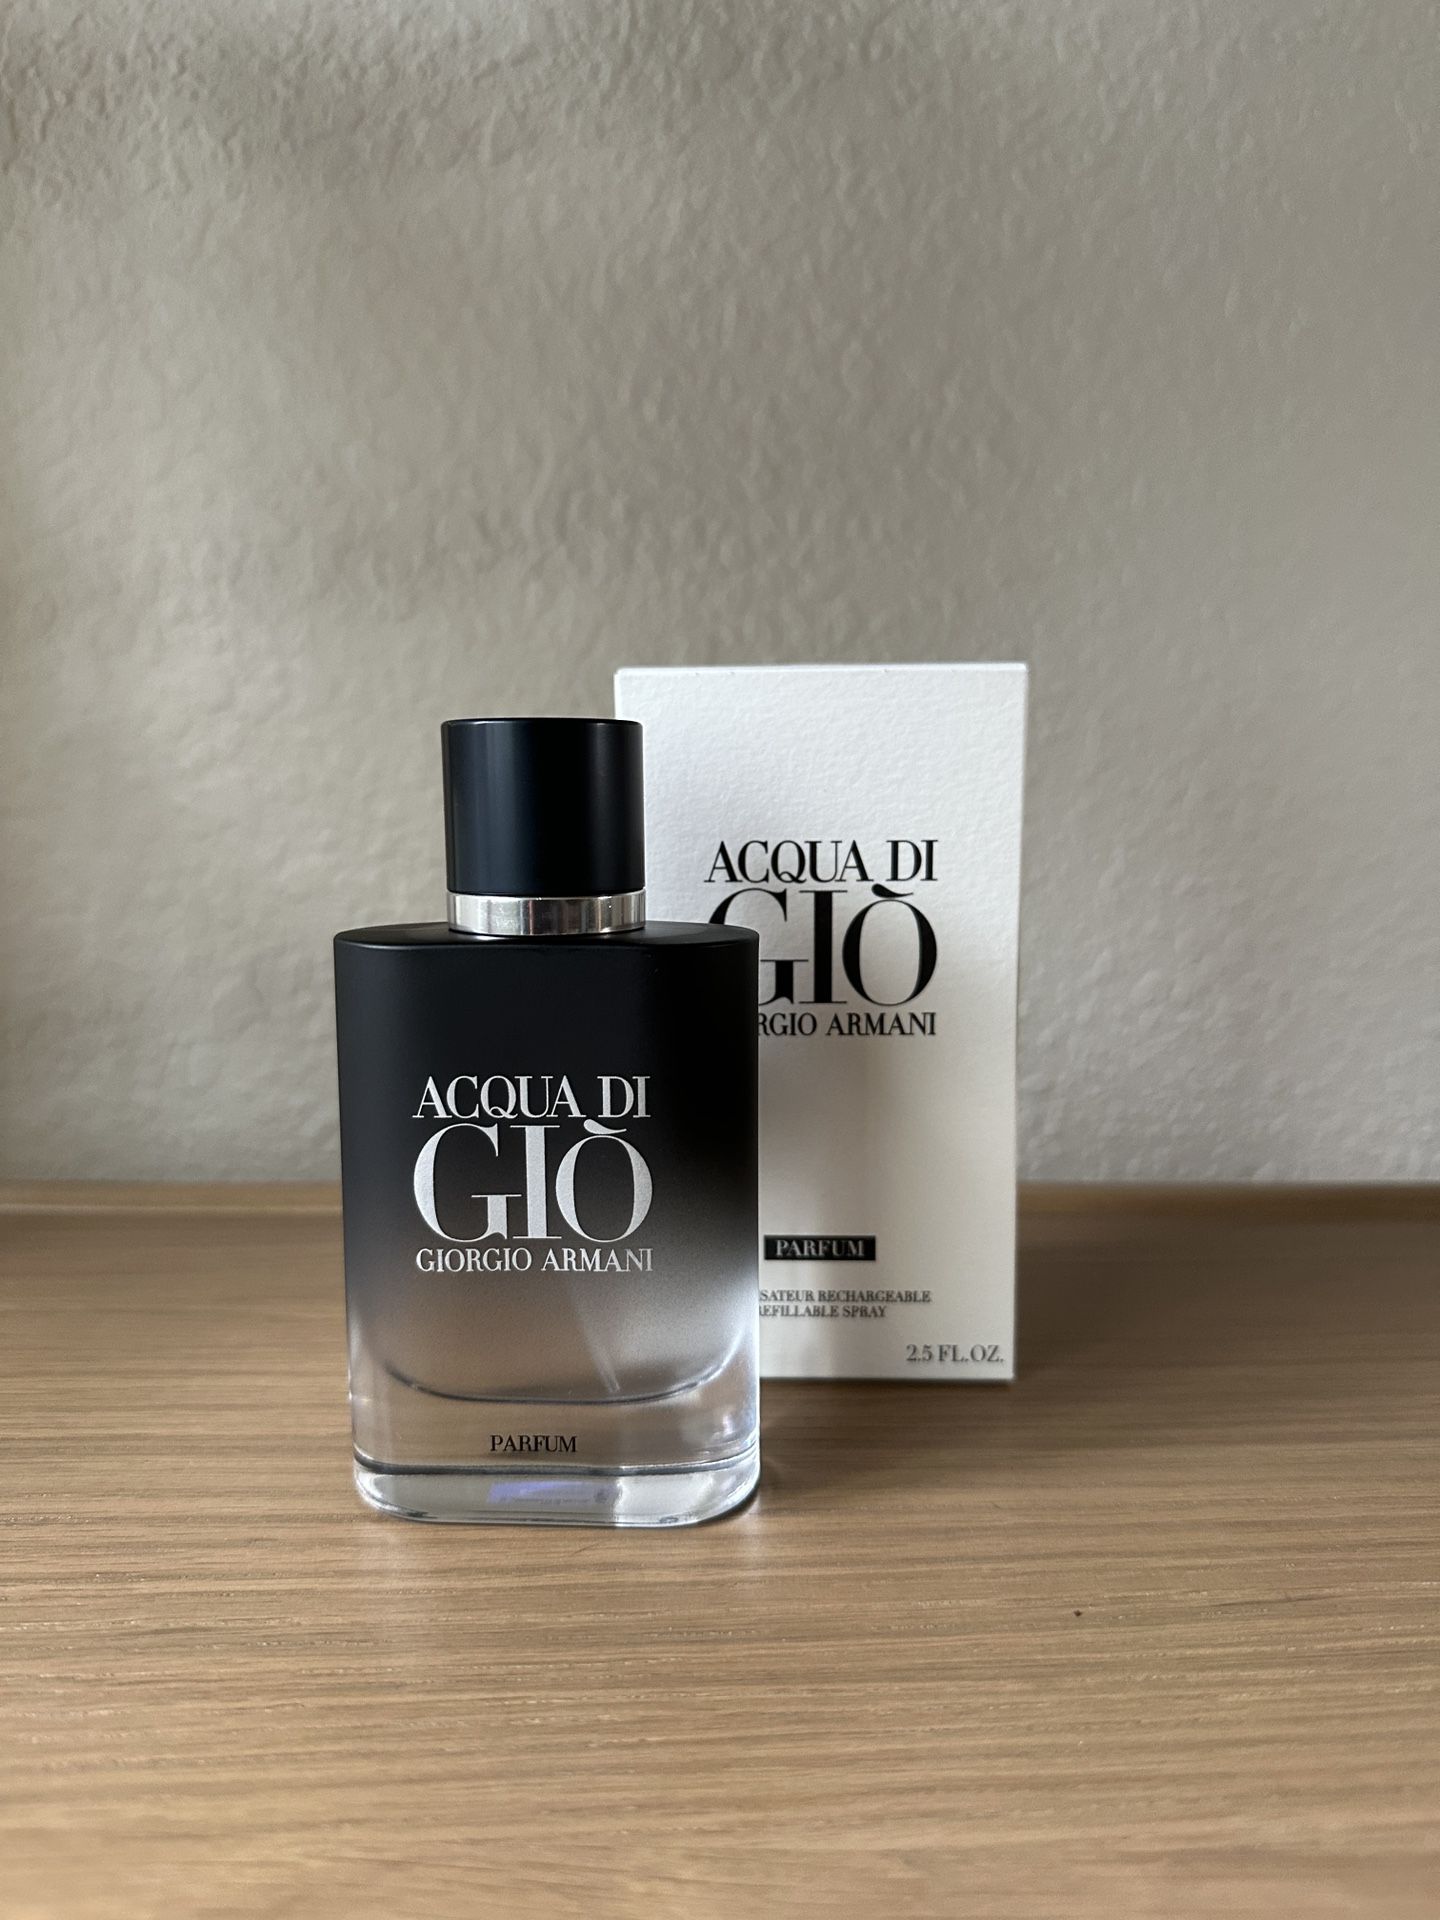 Armani Acqua Di Gio Parfum Cologne Fragrance